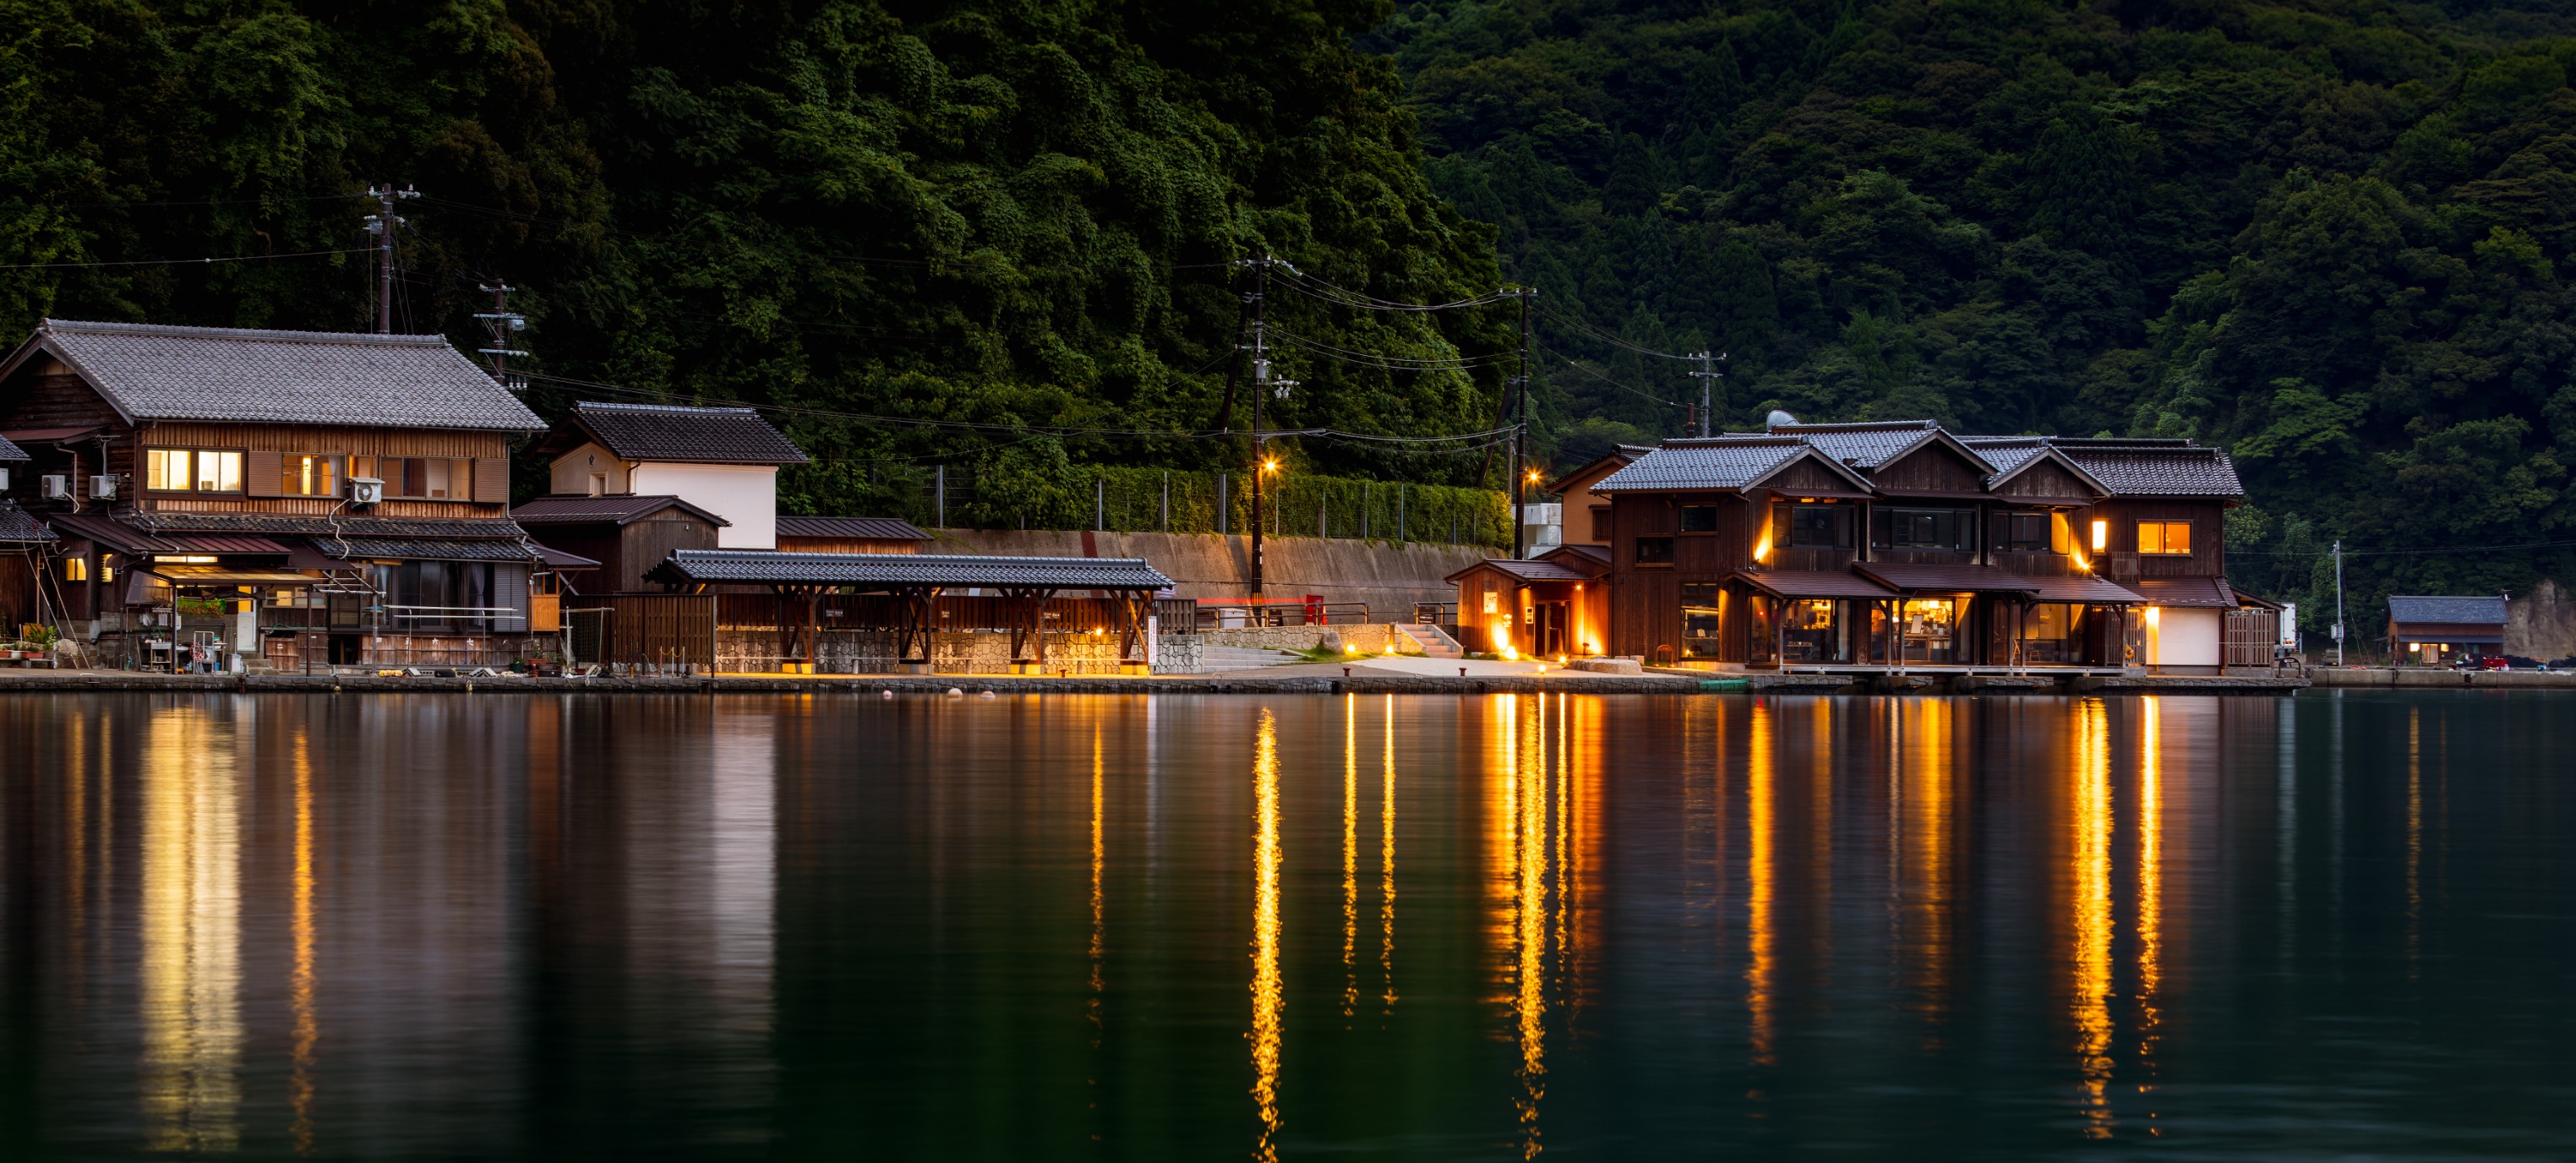 天神遺落在人間的橋樑－日本三景「天橋立」 遊客必訪7個絕美景點！